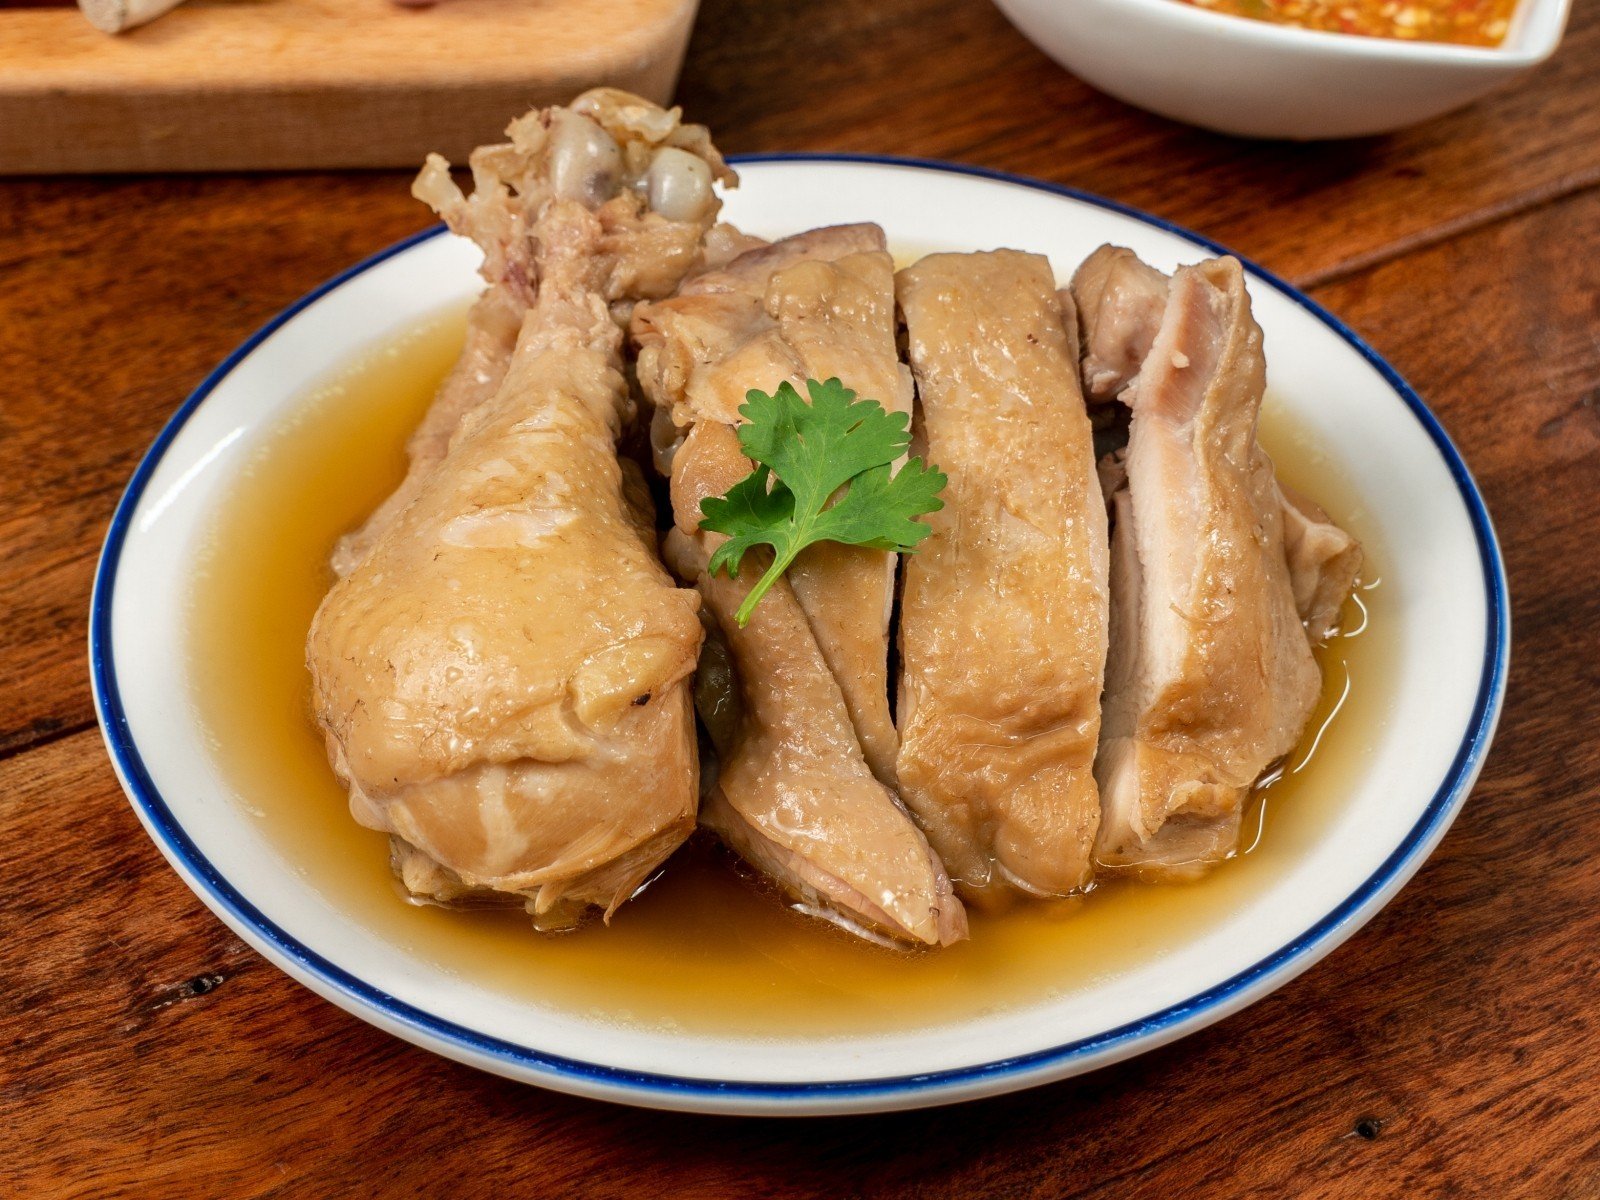 วิธีทำ “ไก่ต้มน้ำปลา” เมนูหม้อหุงข้าวทำง่าย ไก่เนื้อนุ่มชุ่มฉ่ำ!